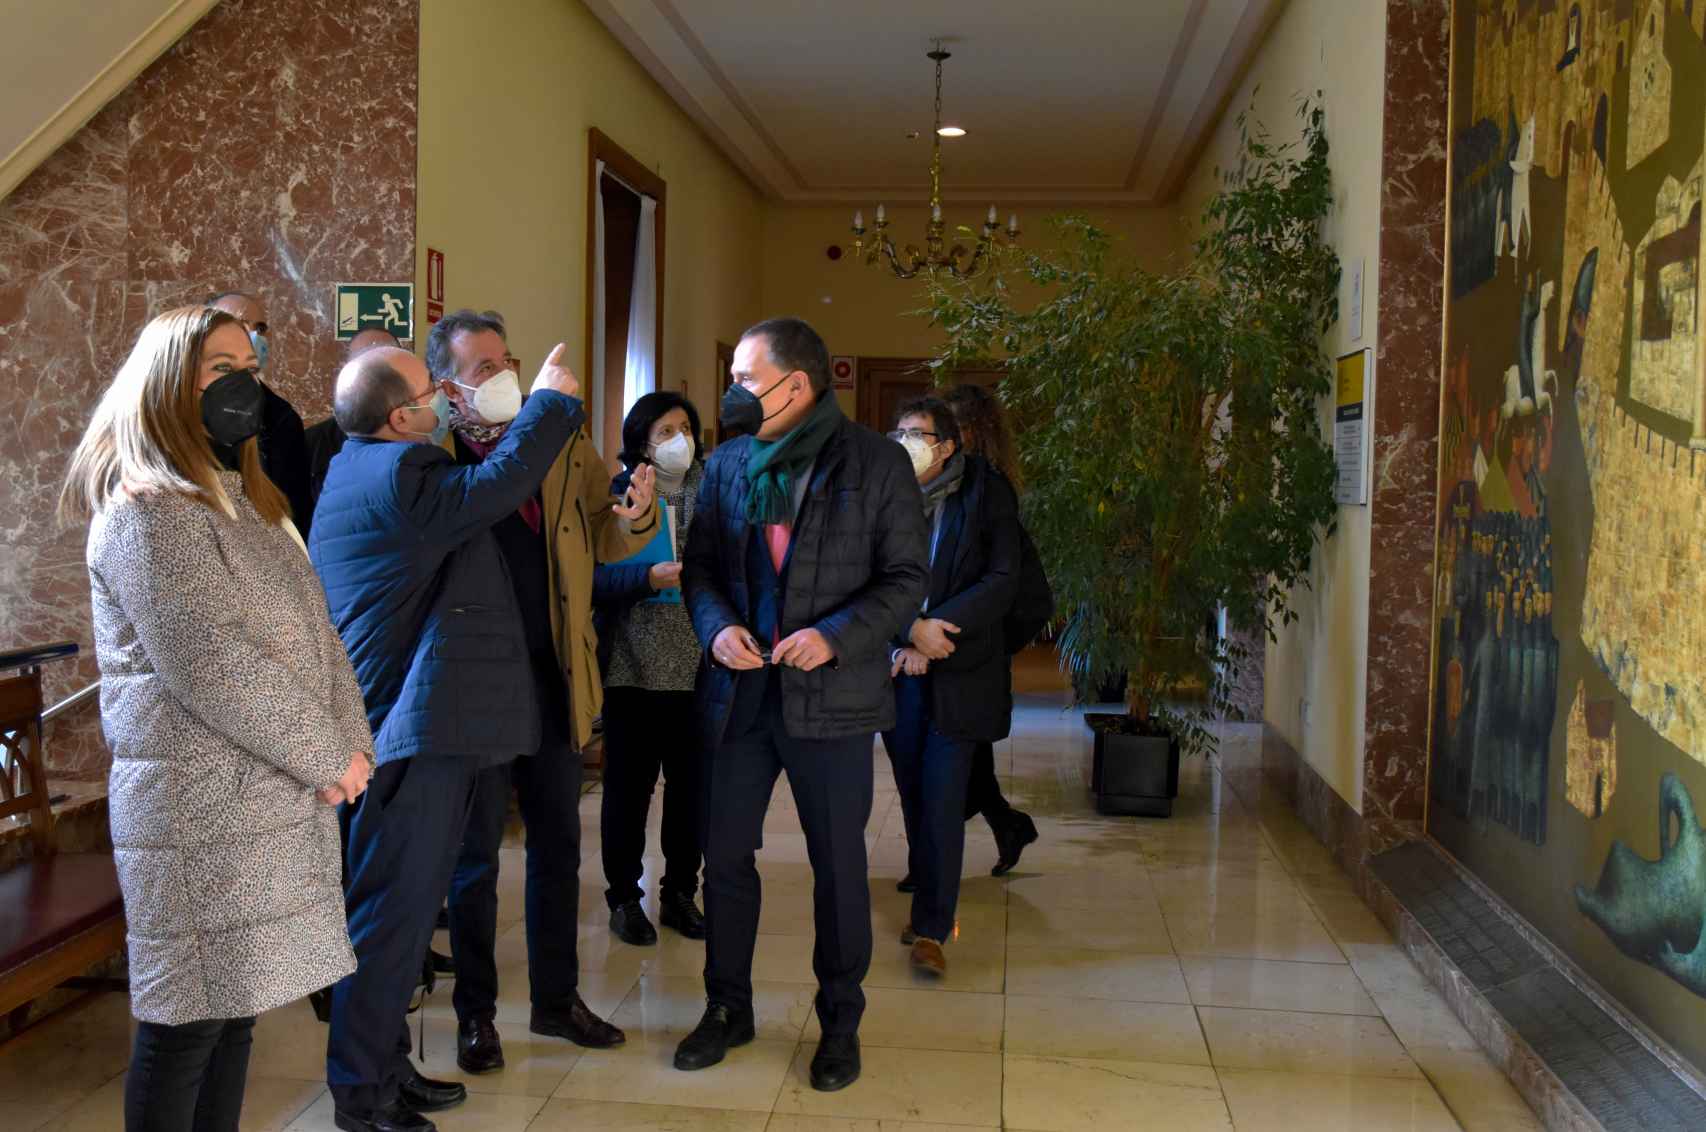 El ministro de Cultura, Miquel Iceta interesándose por el cuadro de Antonio Pedrero del Cerco de Zamora